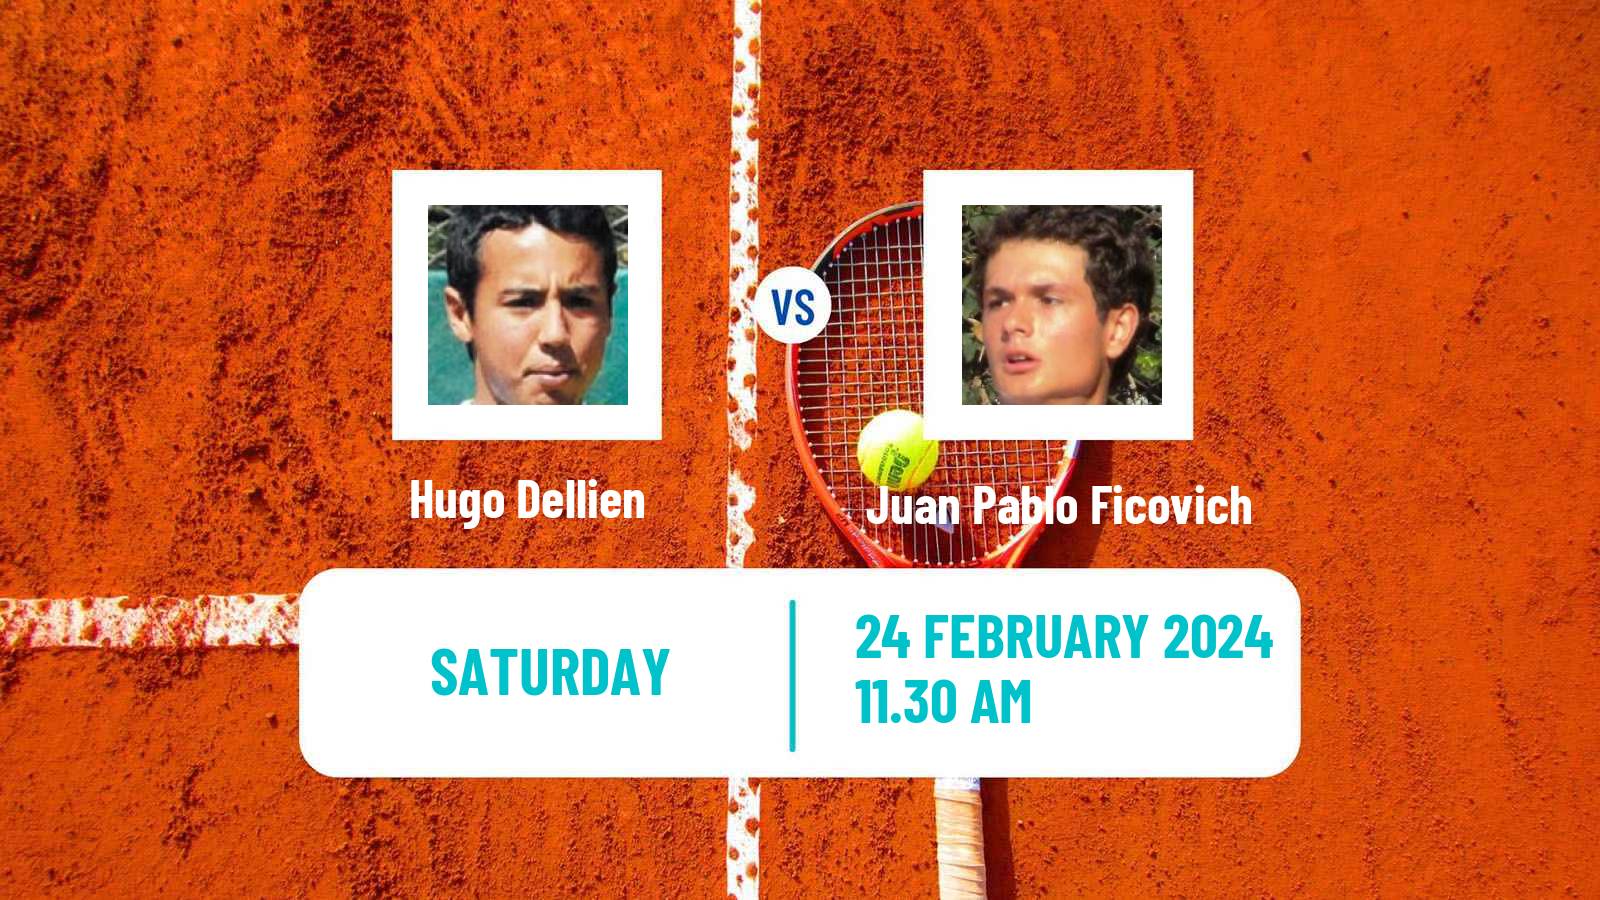 Tennis ATP Santiago Hugo Dellien - Juan Pablo Ficovich